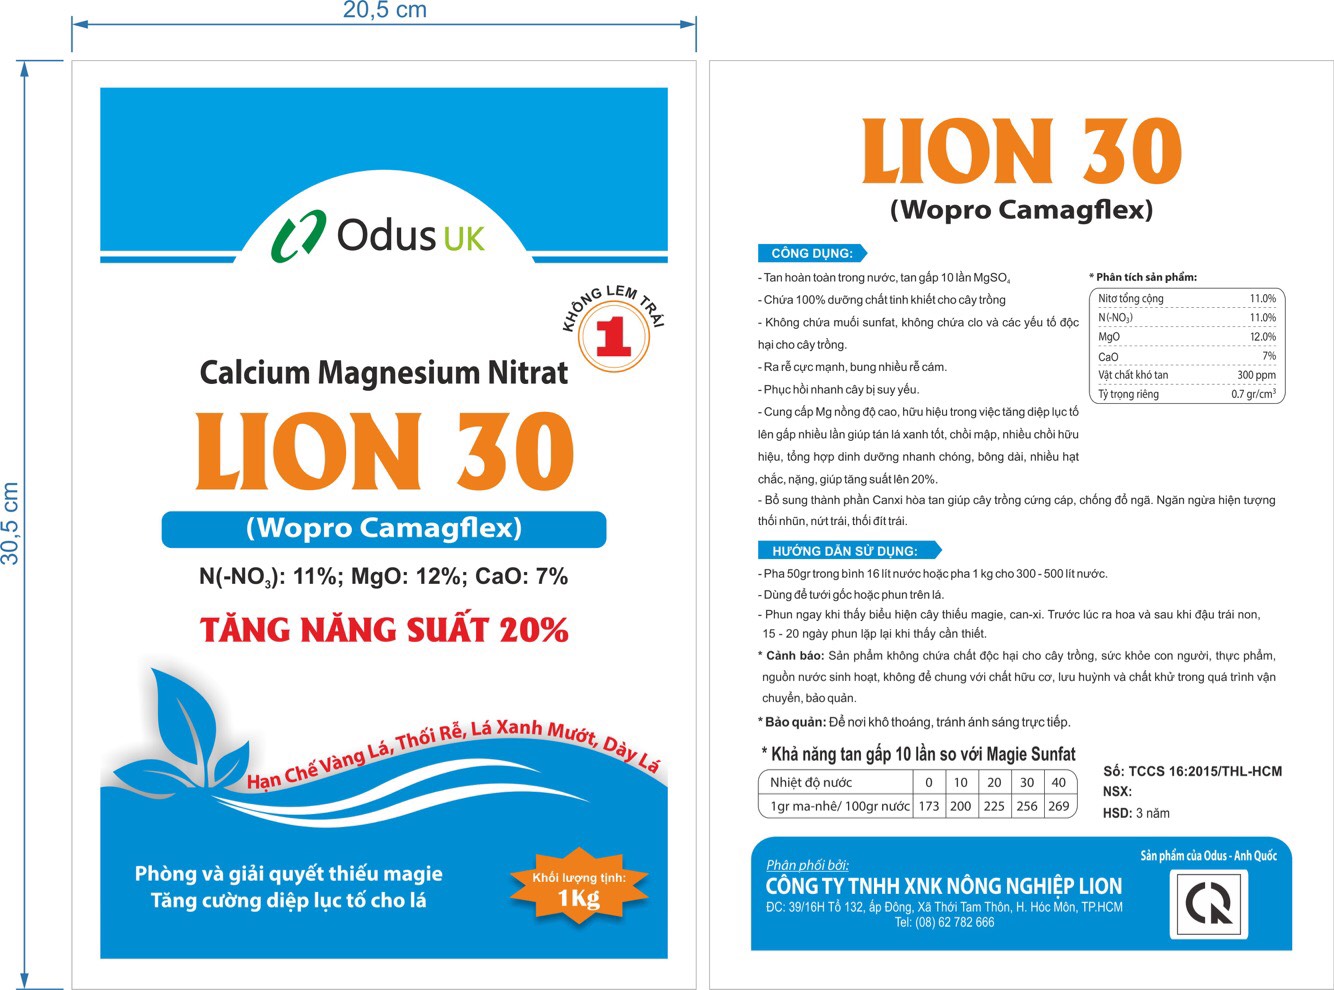 Odus UK Calcium Magnesium Nitrat LION 30